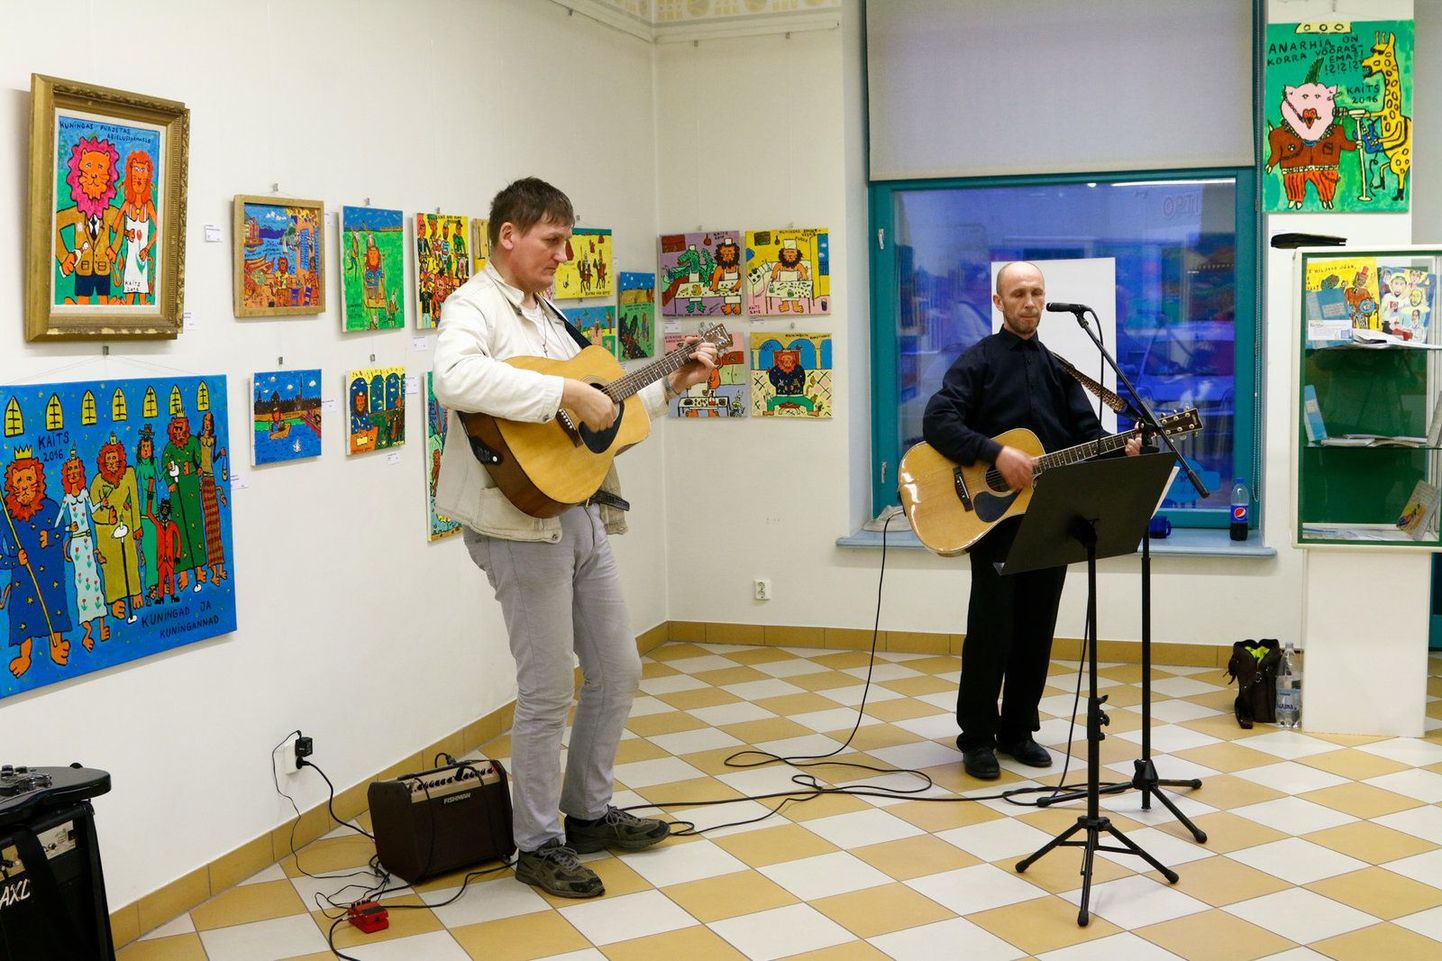 Lisaks oma kunstiandele esitles Raido Rätsep (vasakul) näituse avamisele tulnutele ka oma lauluoskust, esitades koos oma sõbraga punklaule.